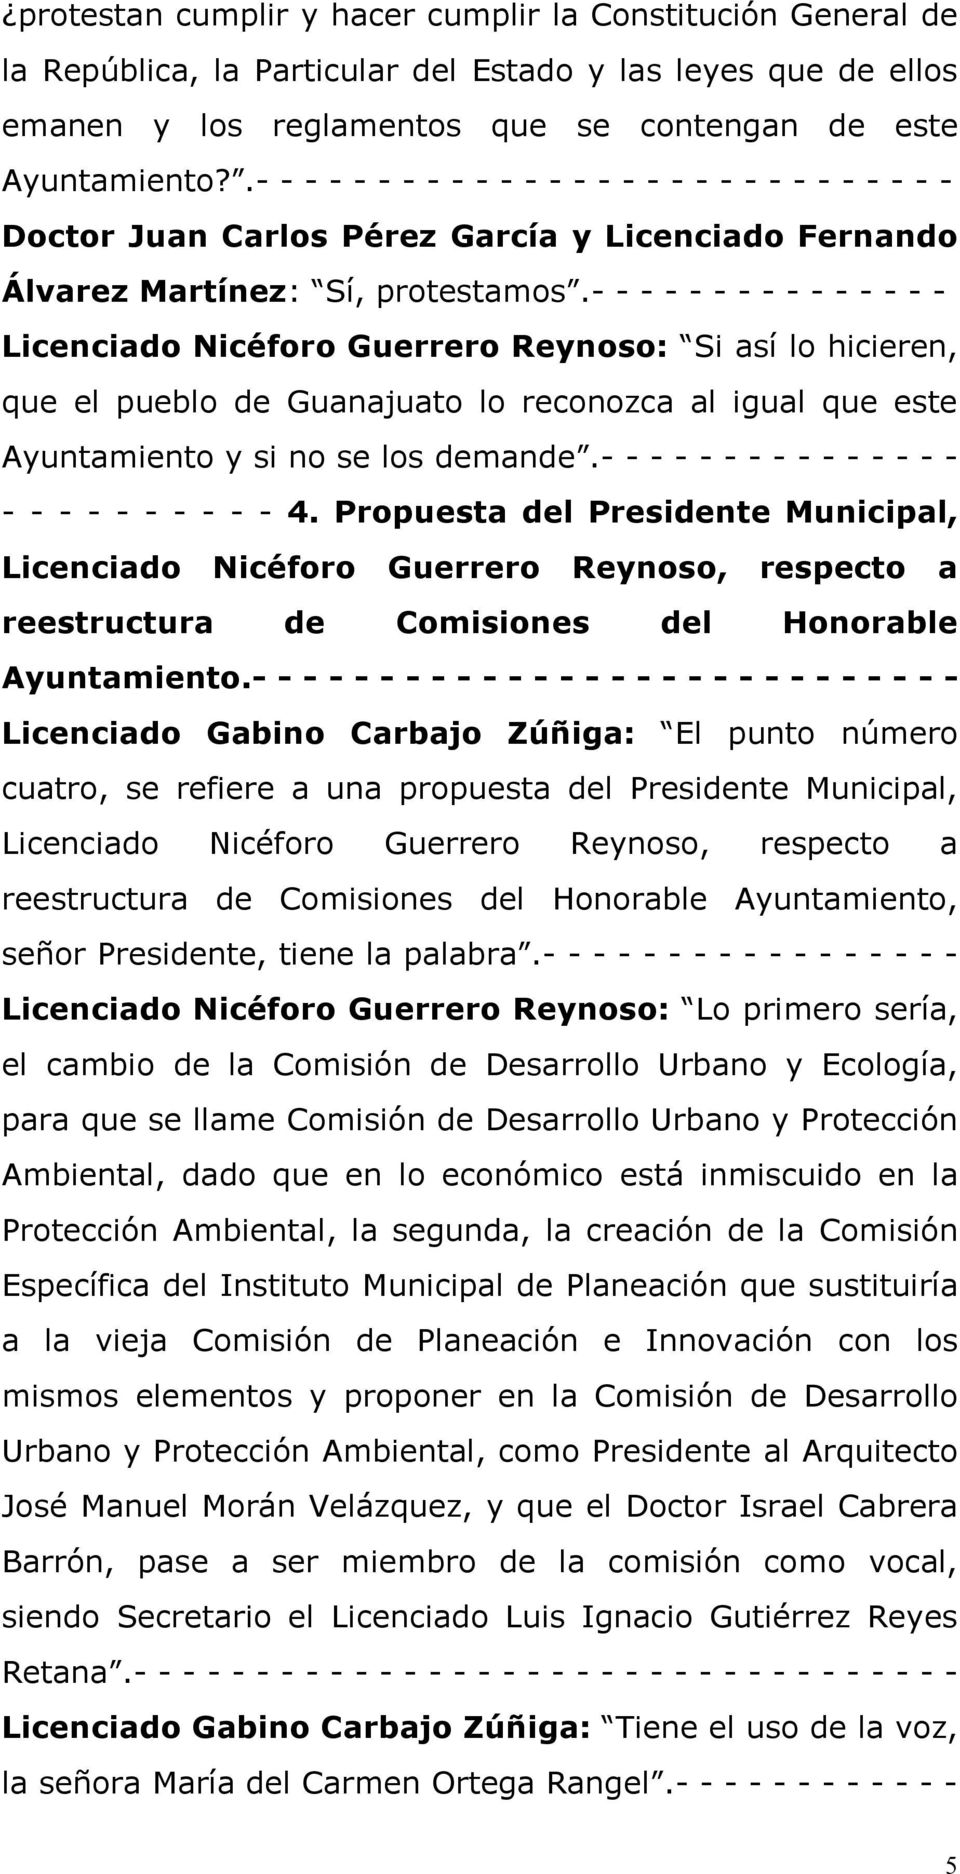 - - - - - - - - - - - - - - - Licenciado Nicéforo Guerrero Reynoso: Si así lo hicieren, que el pueblo de Guanajuato lo reconozca al igual que este Ayuntamiento y si no se los demande.